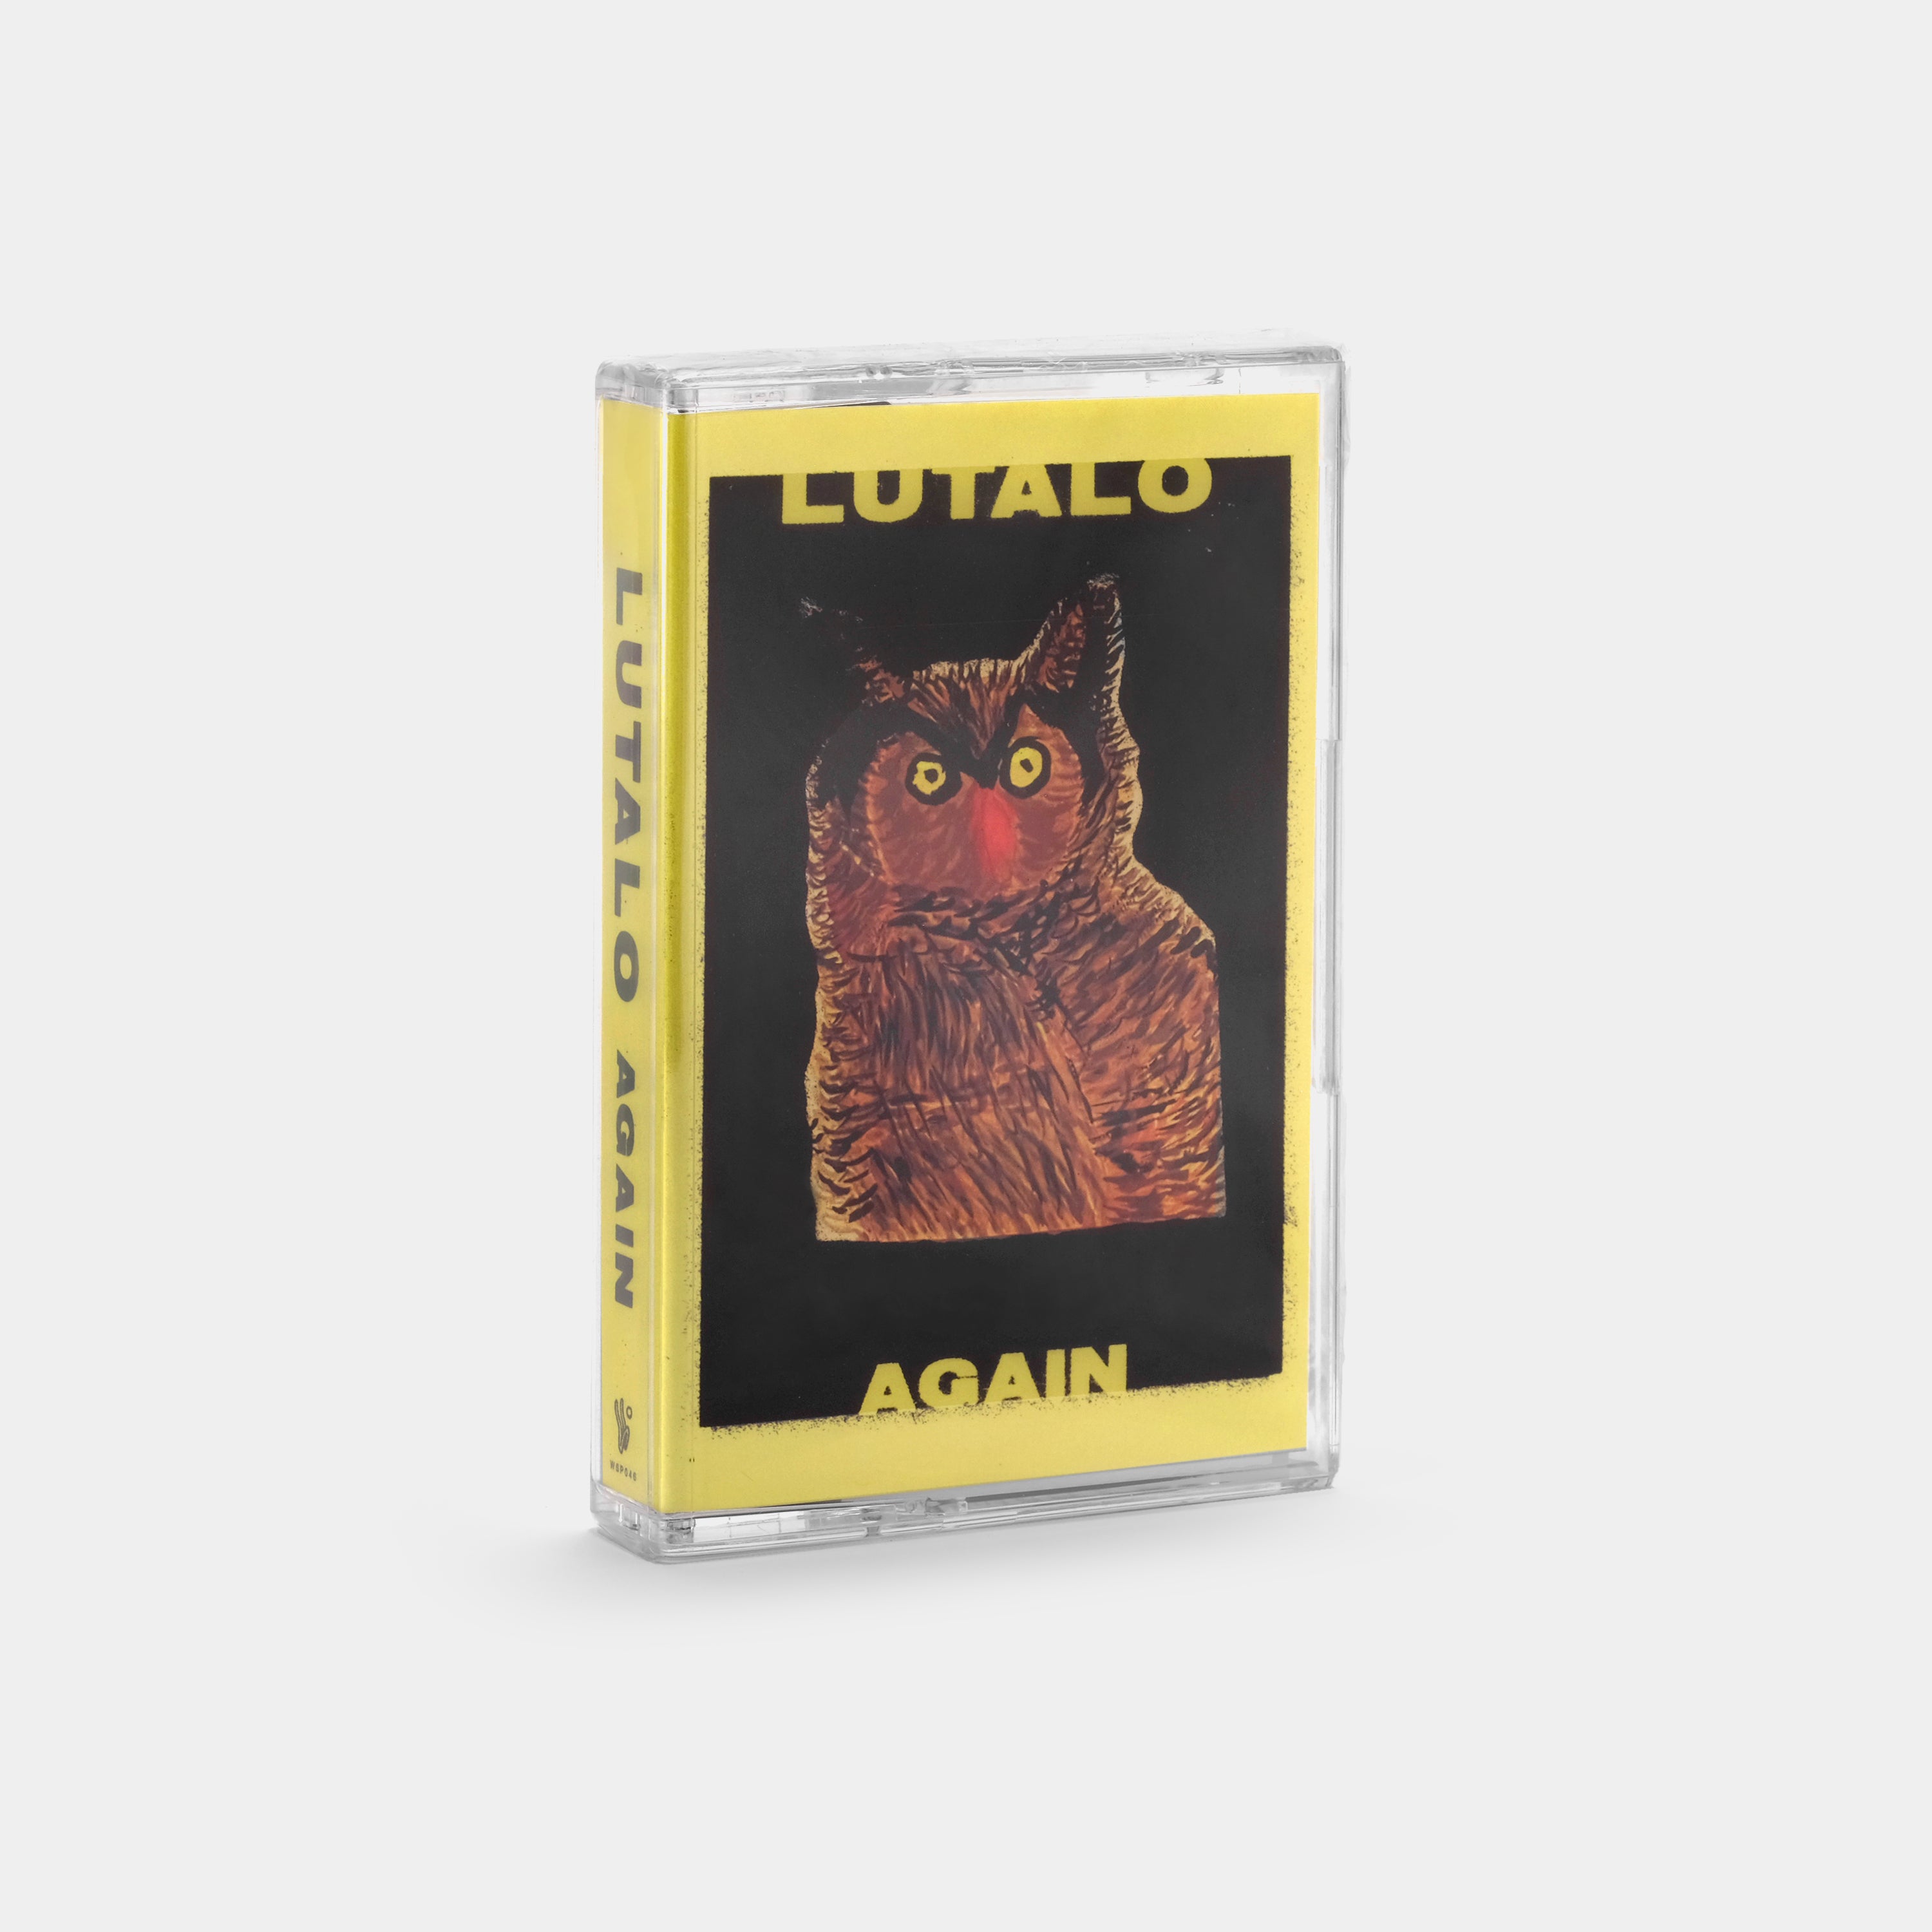 Lutalo - Again Cassette Tape